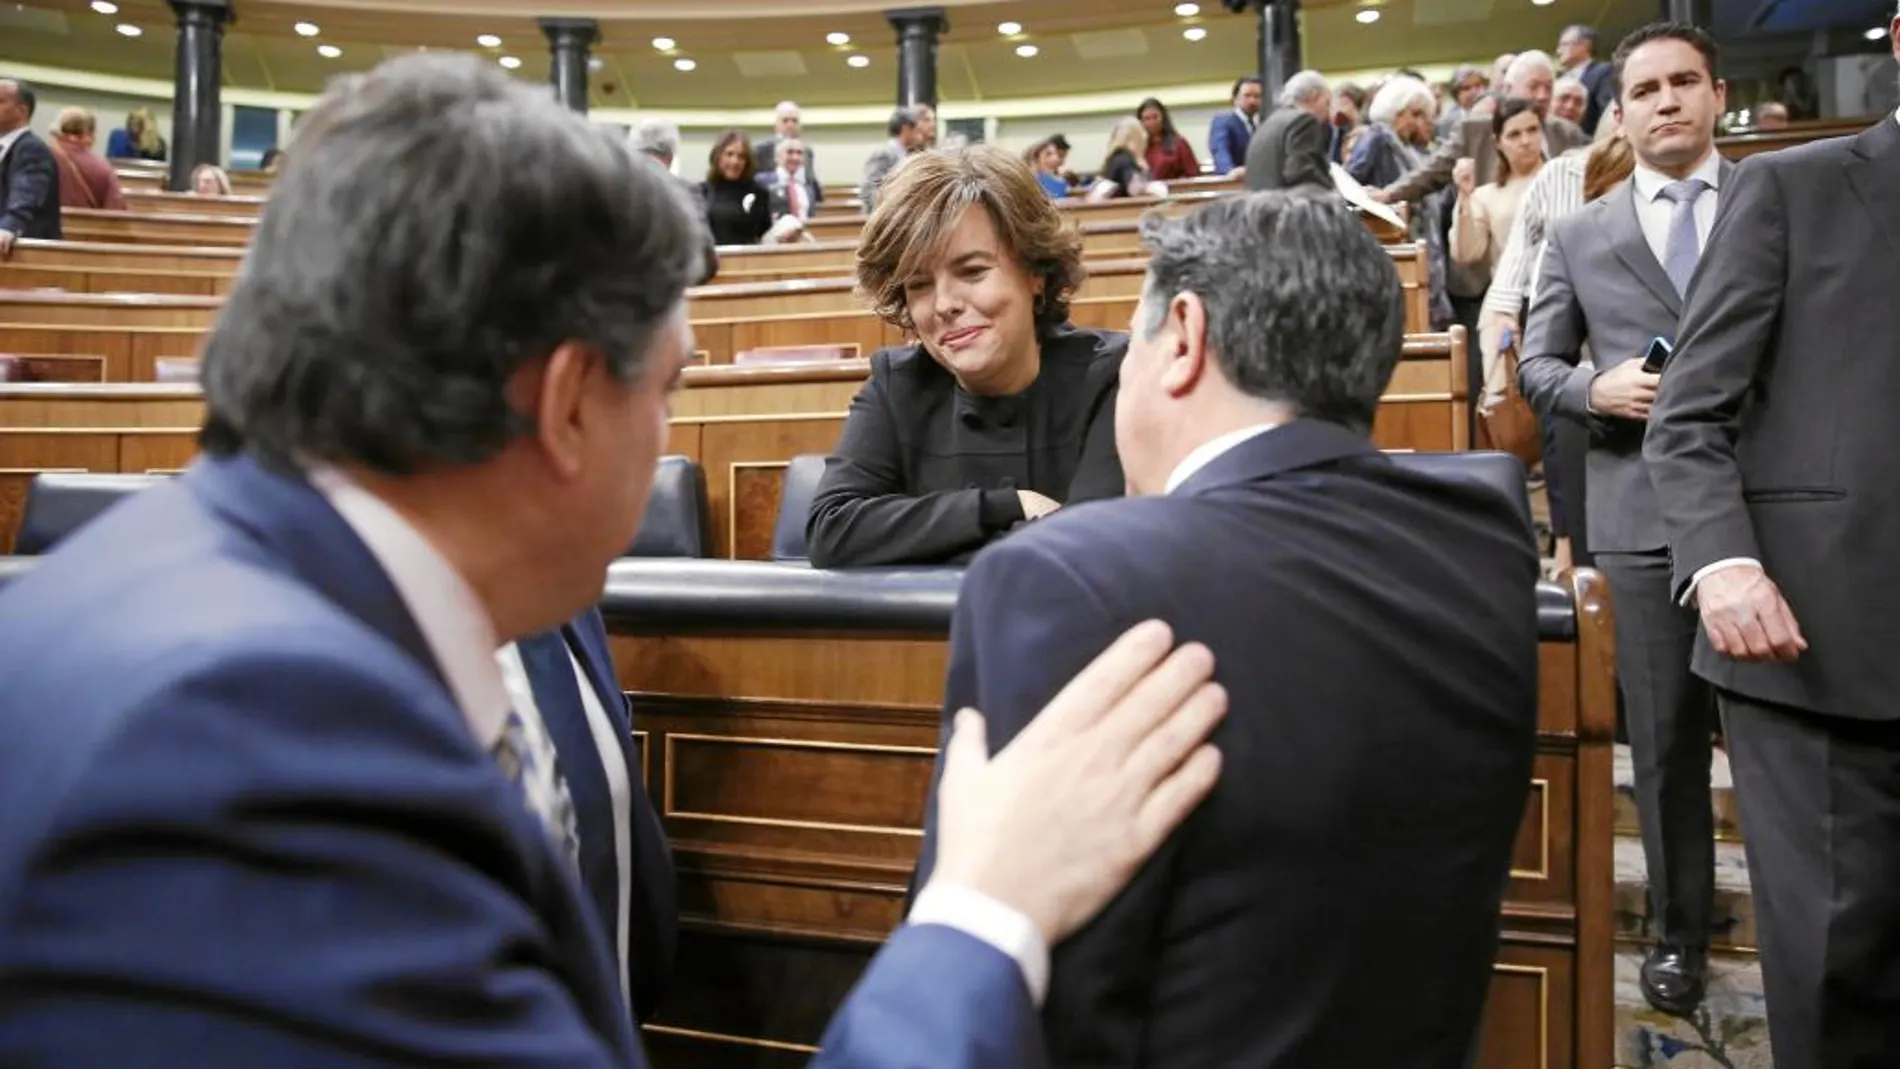 Aitor Esteban pasa junto a la vicepresidenta del Gobierno tras la votación del Cupo vasco en el Congreso de los Diputados